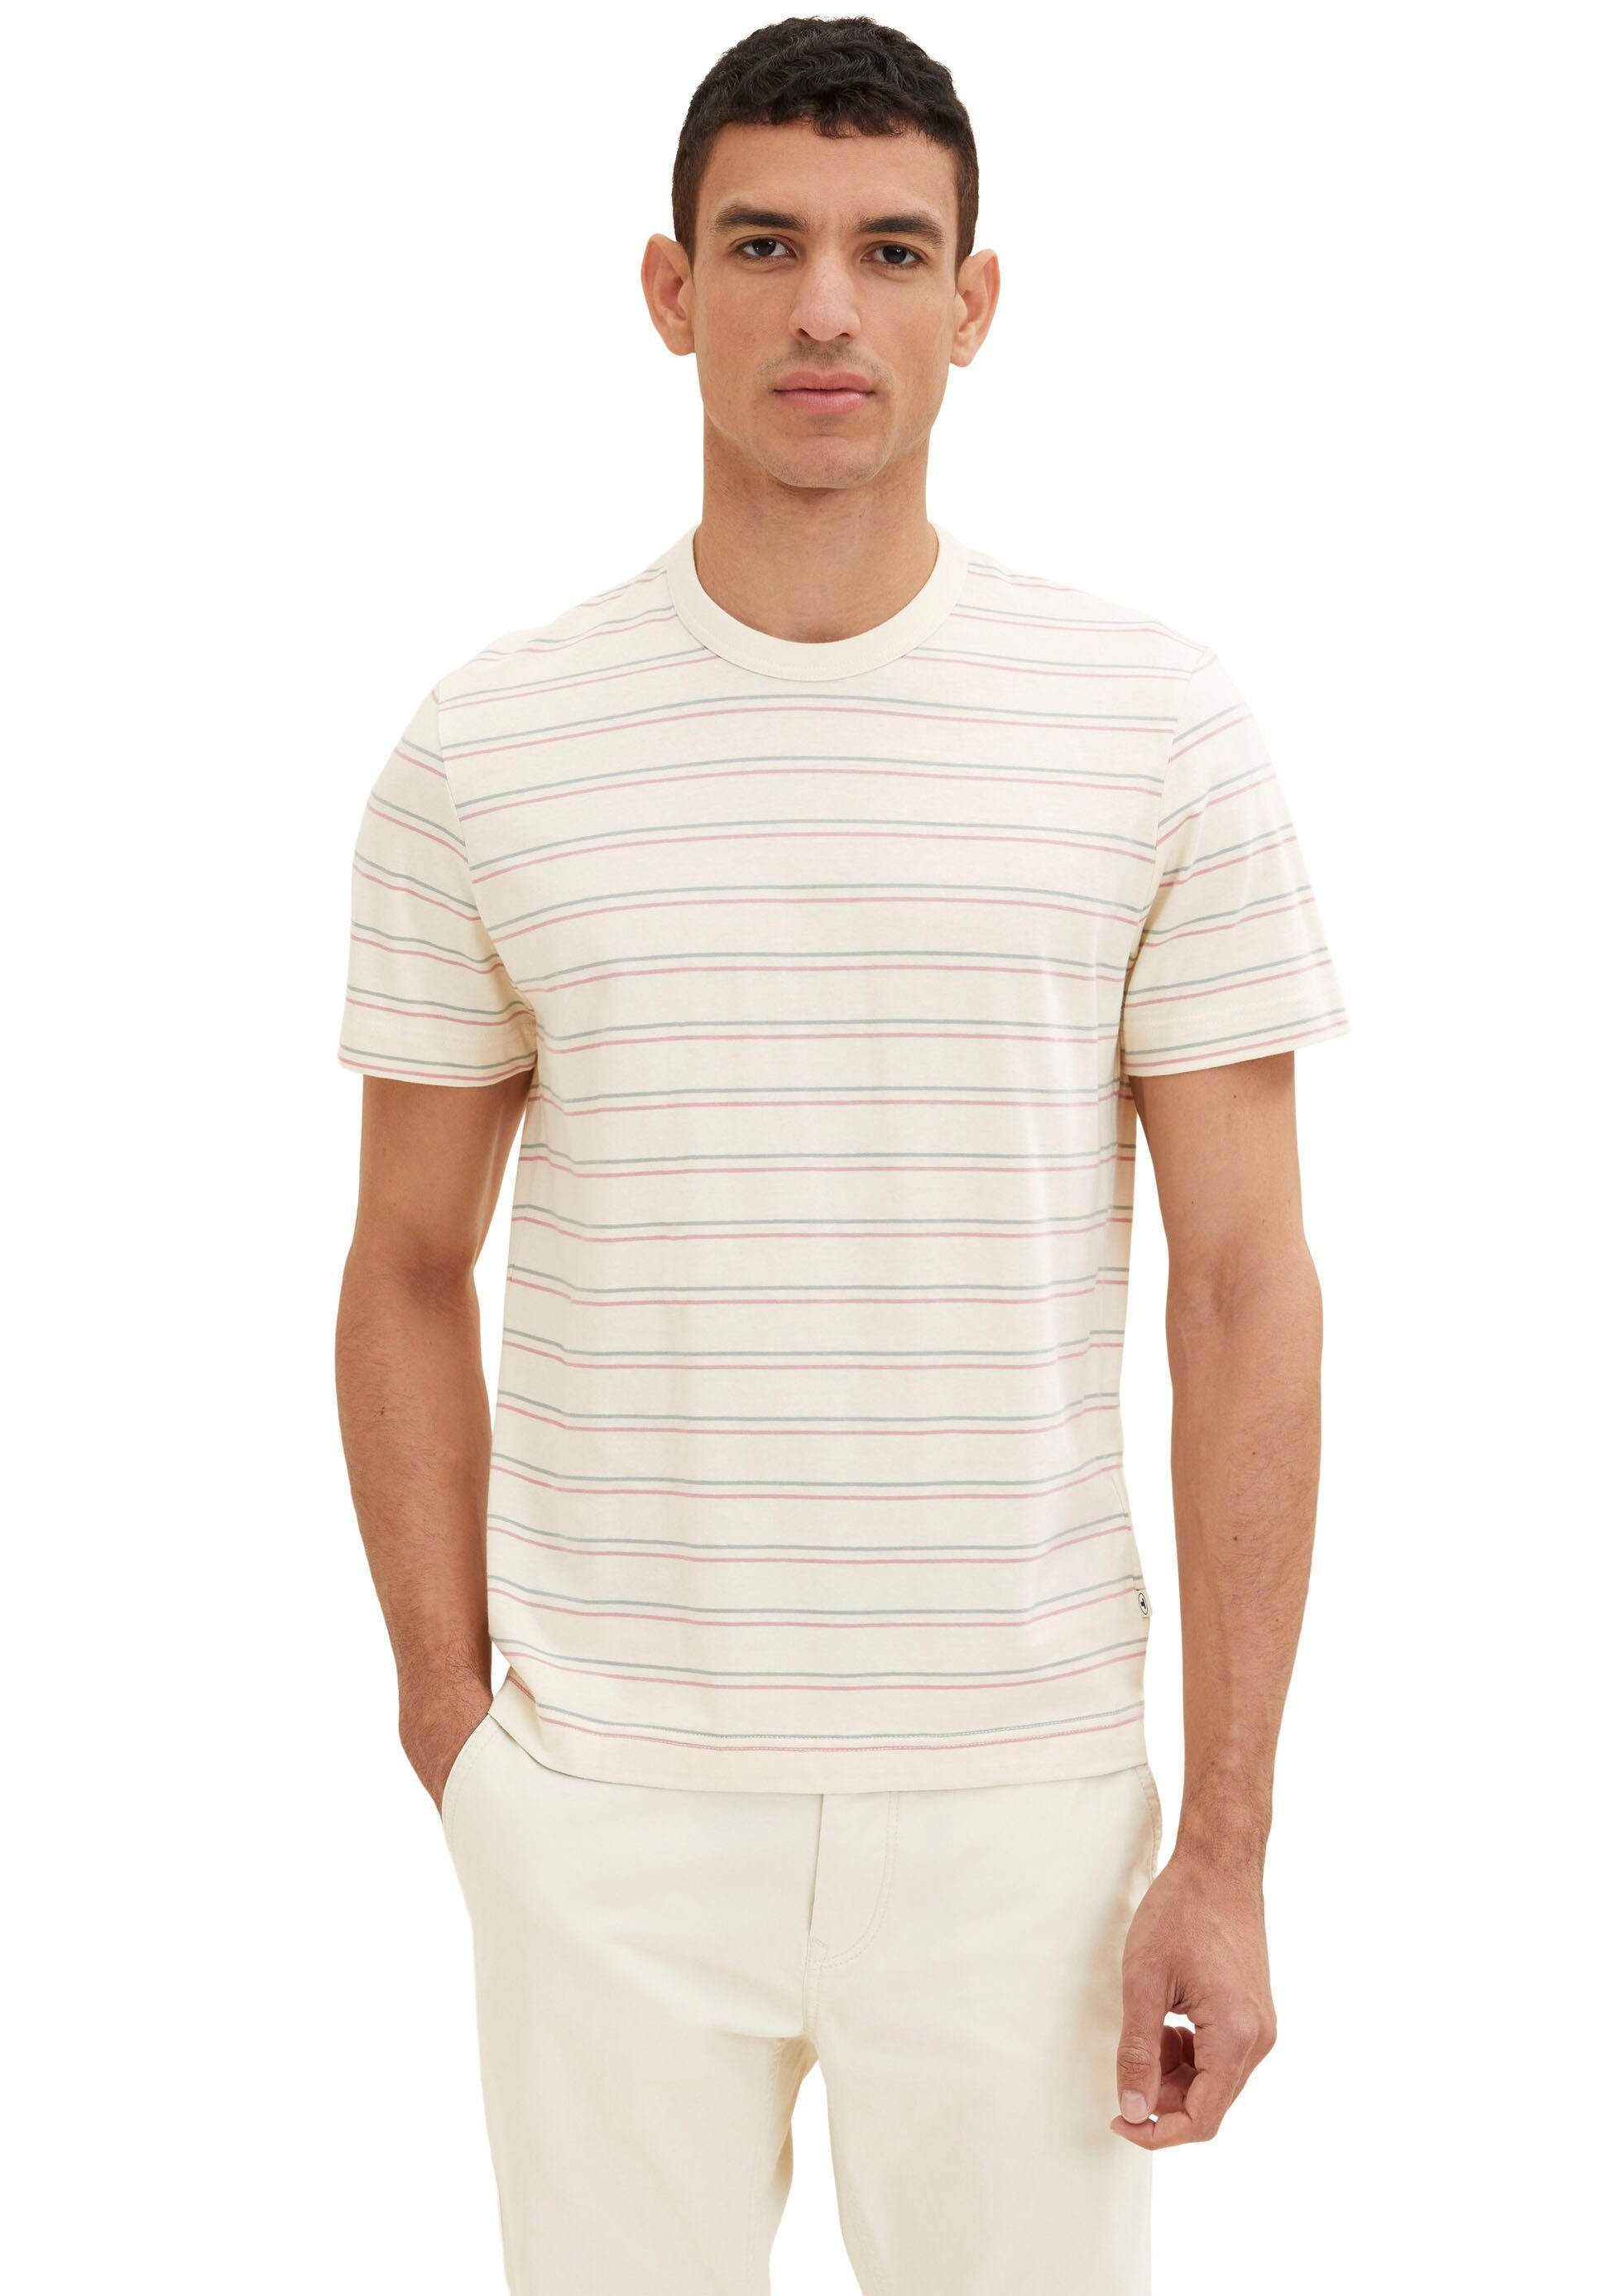 TOM TAILOR T-Shirt vintage beige multi stripe